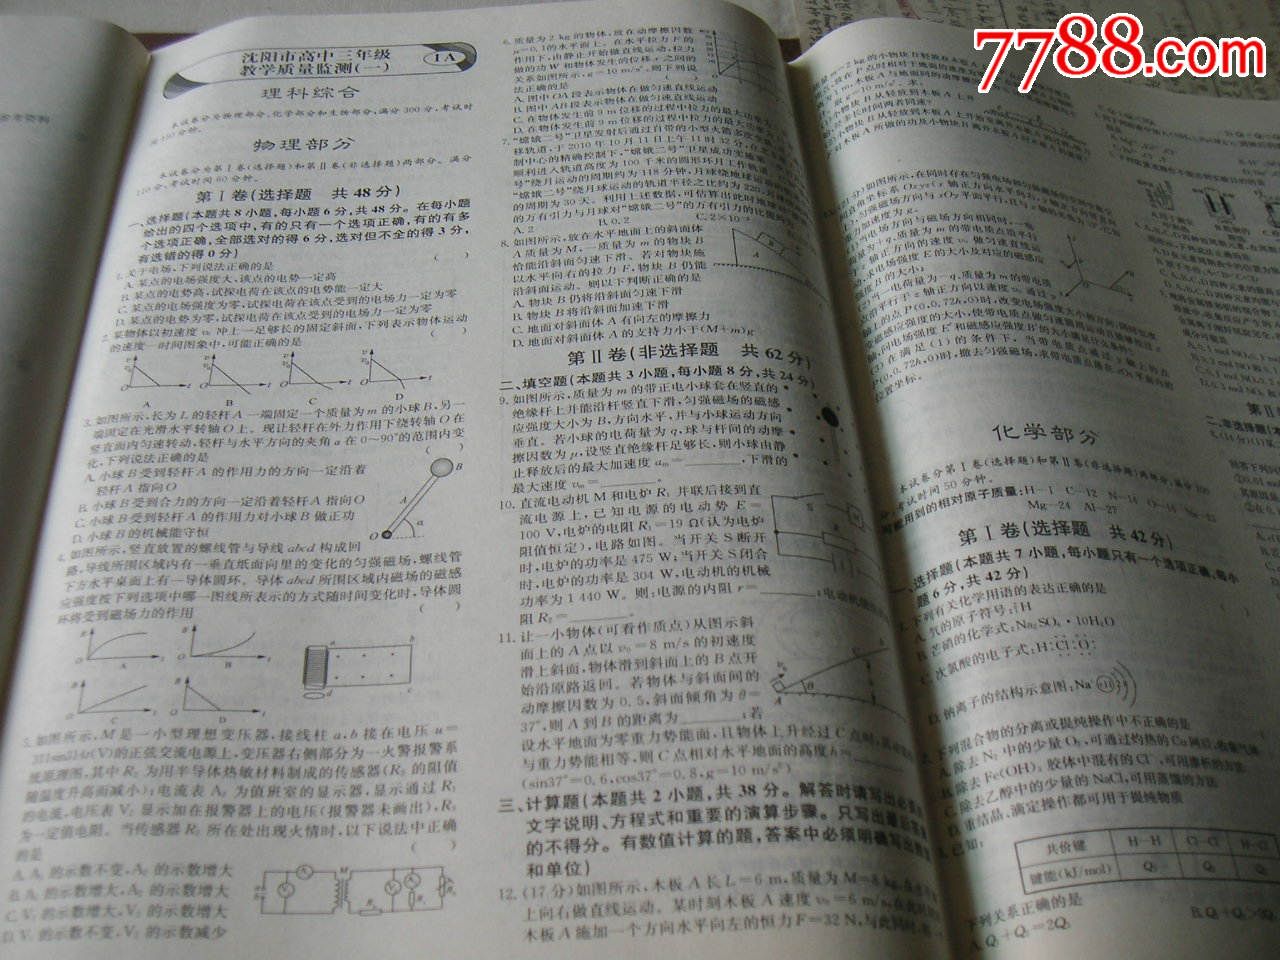 【新课标,天利38套】2013辽宁省高考模拟试题